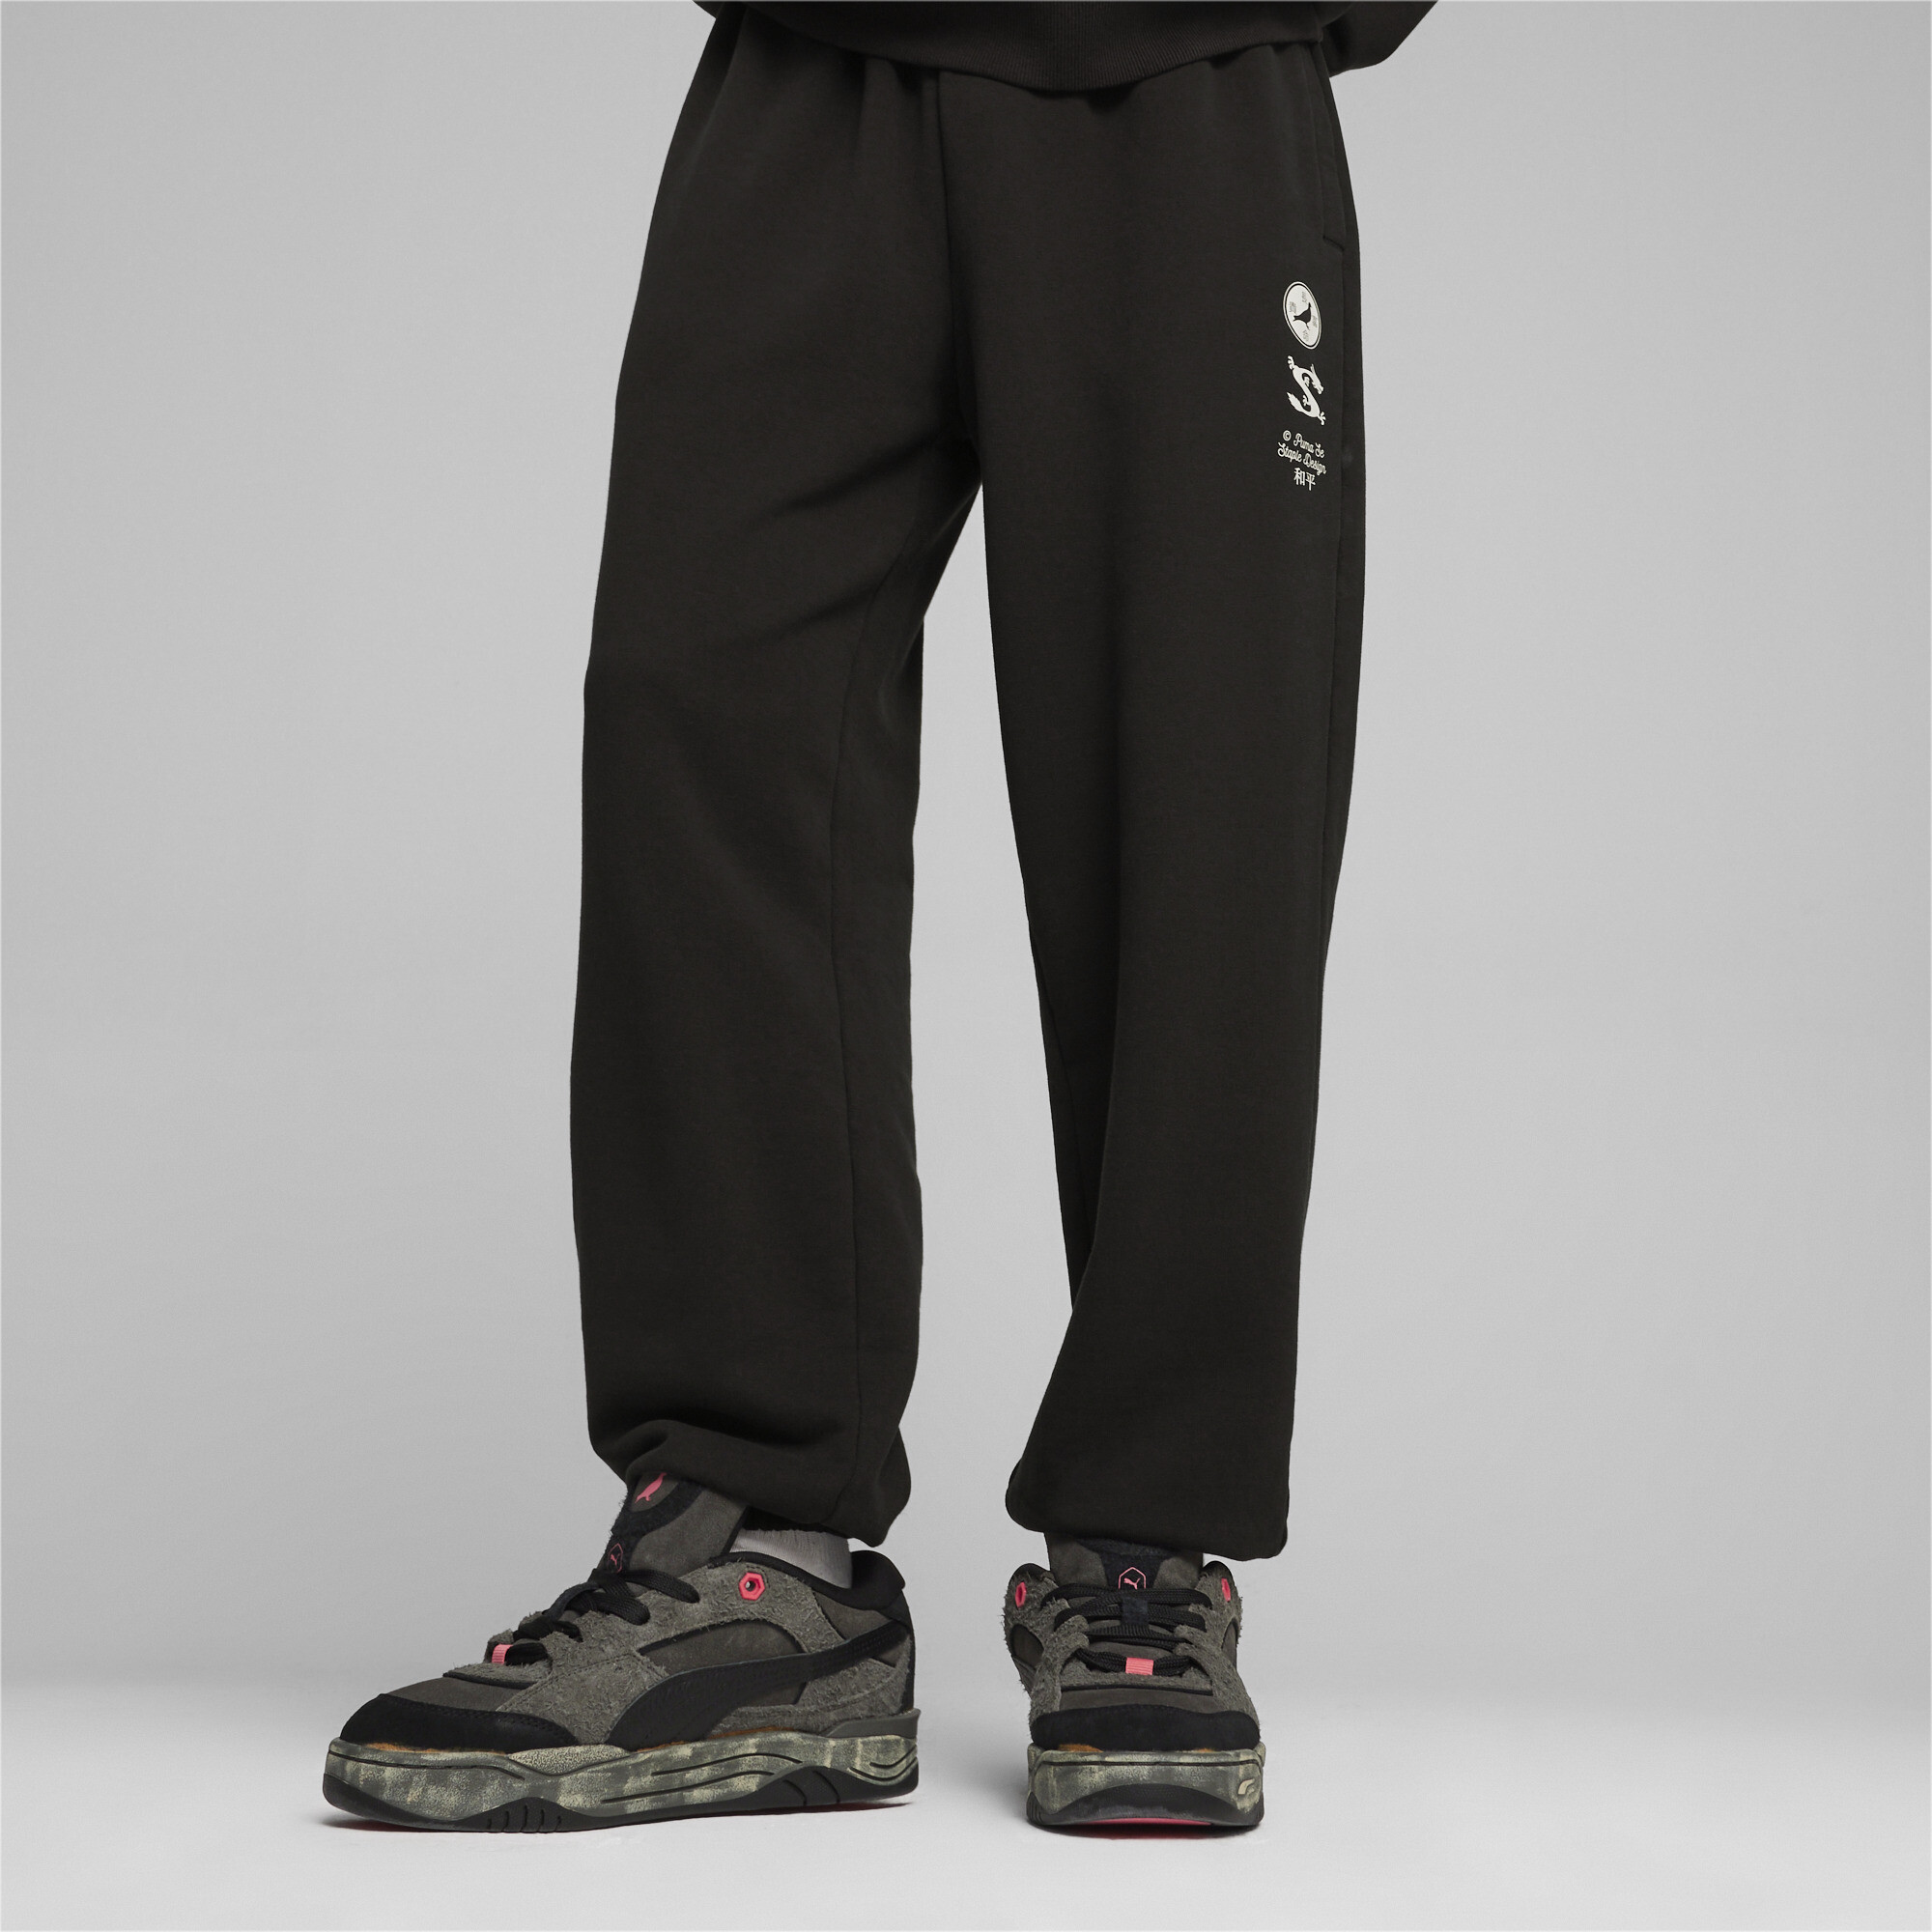 Men's Puma X STAPLE Track Pants, Black, Size XS, Clothing